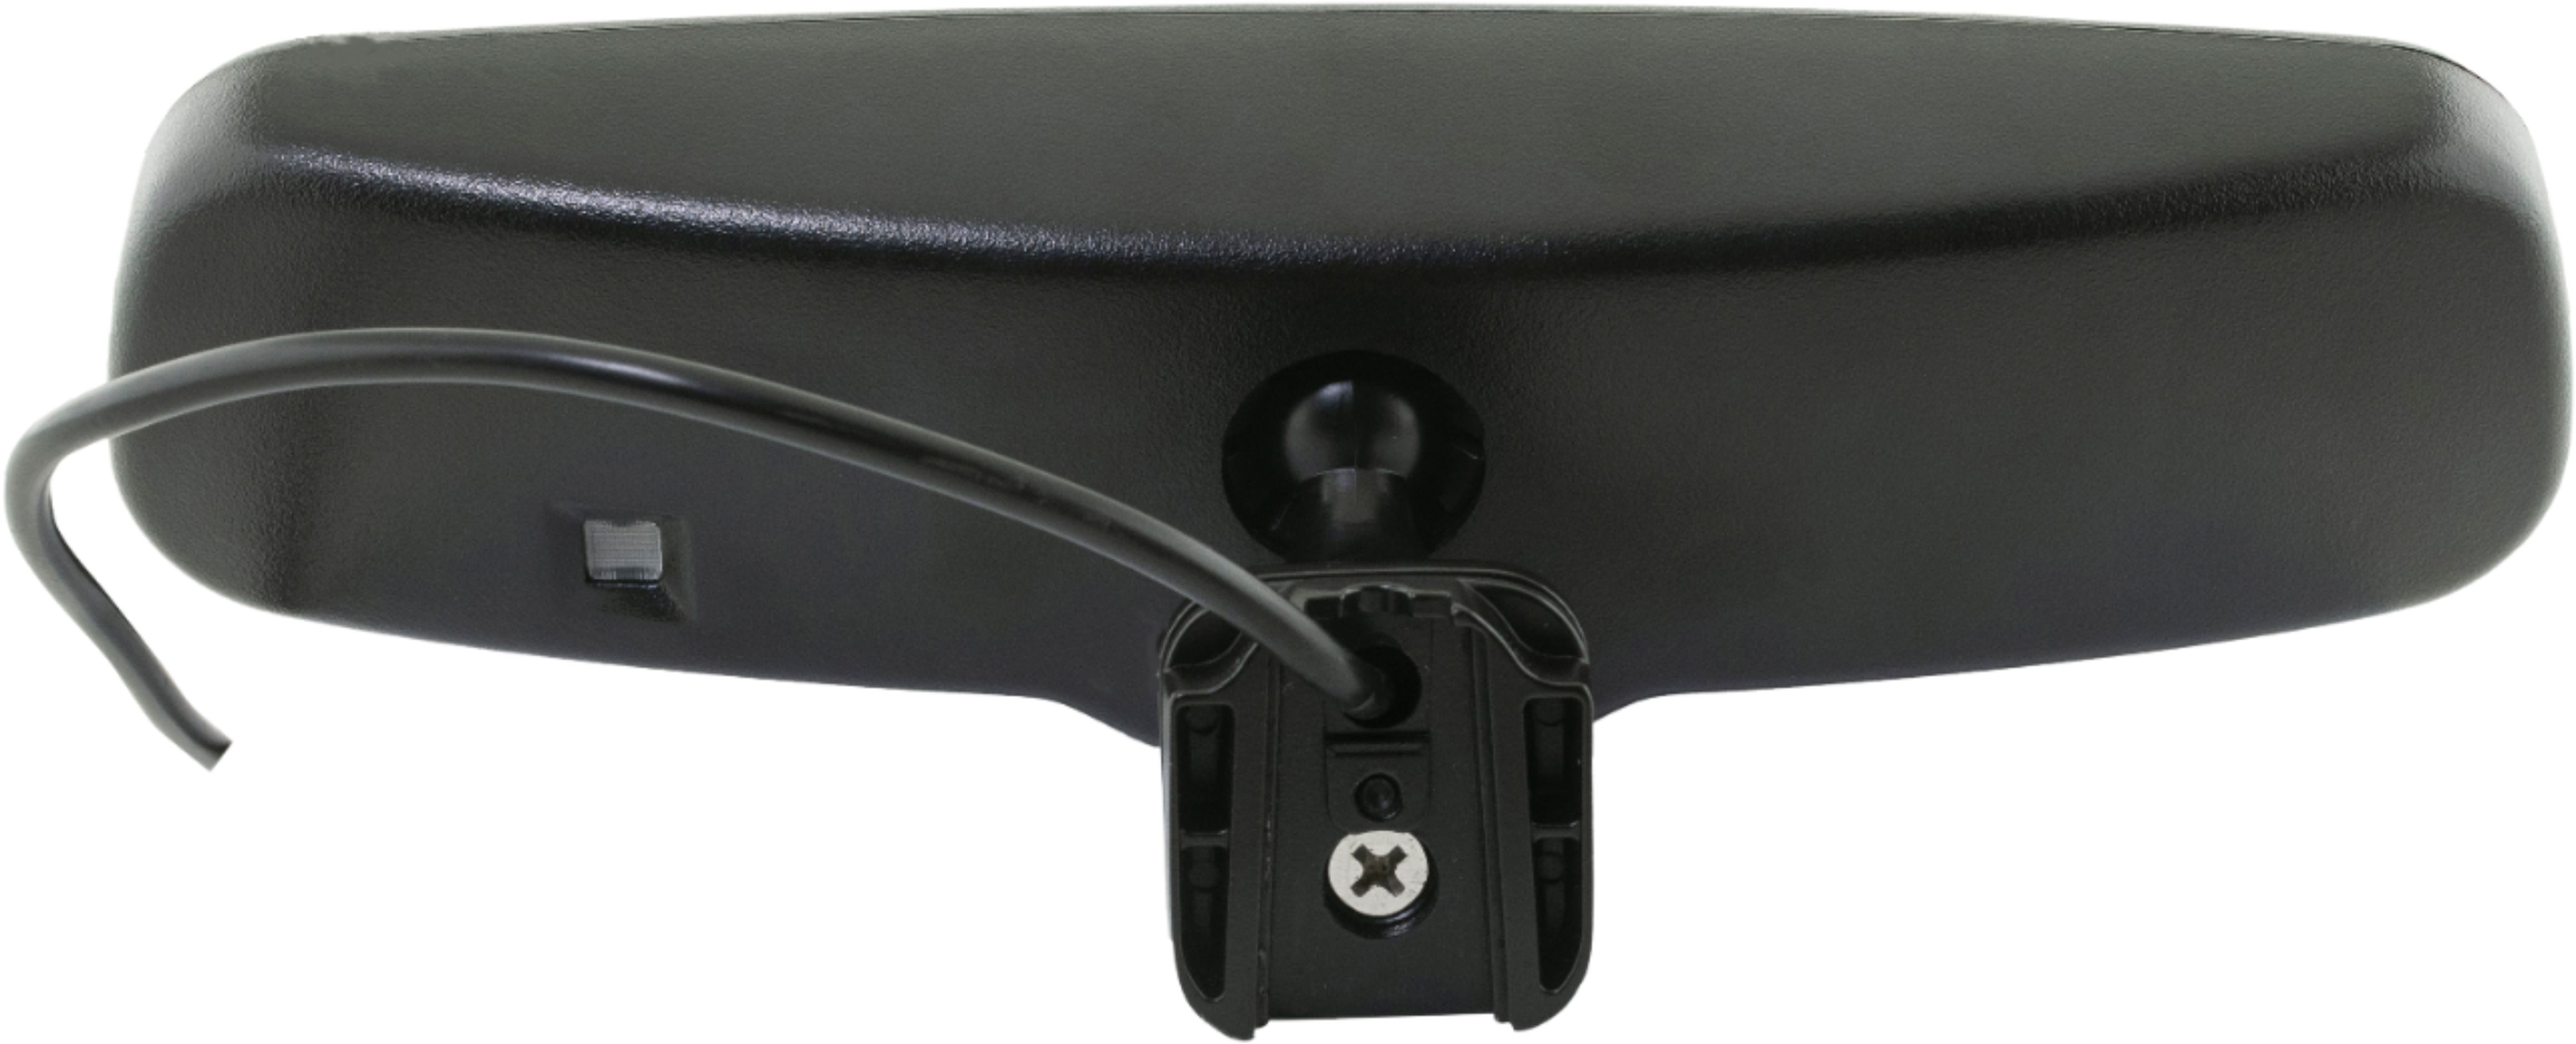 EchoMaster - 4.3” Rear-View Mirror Monitor and Back-Up Camera Kit - Black